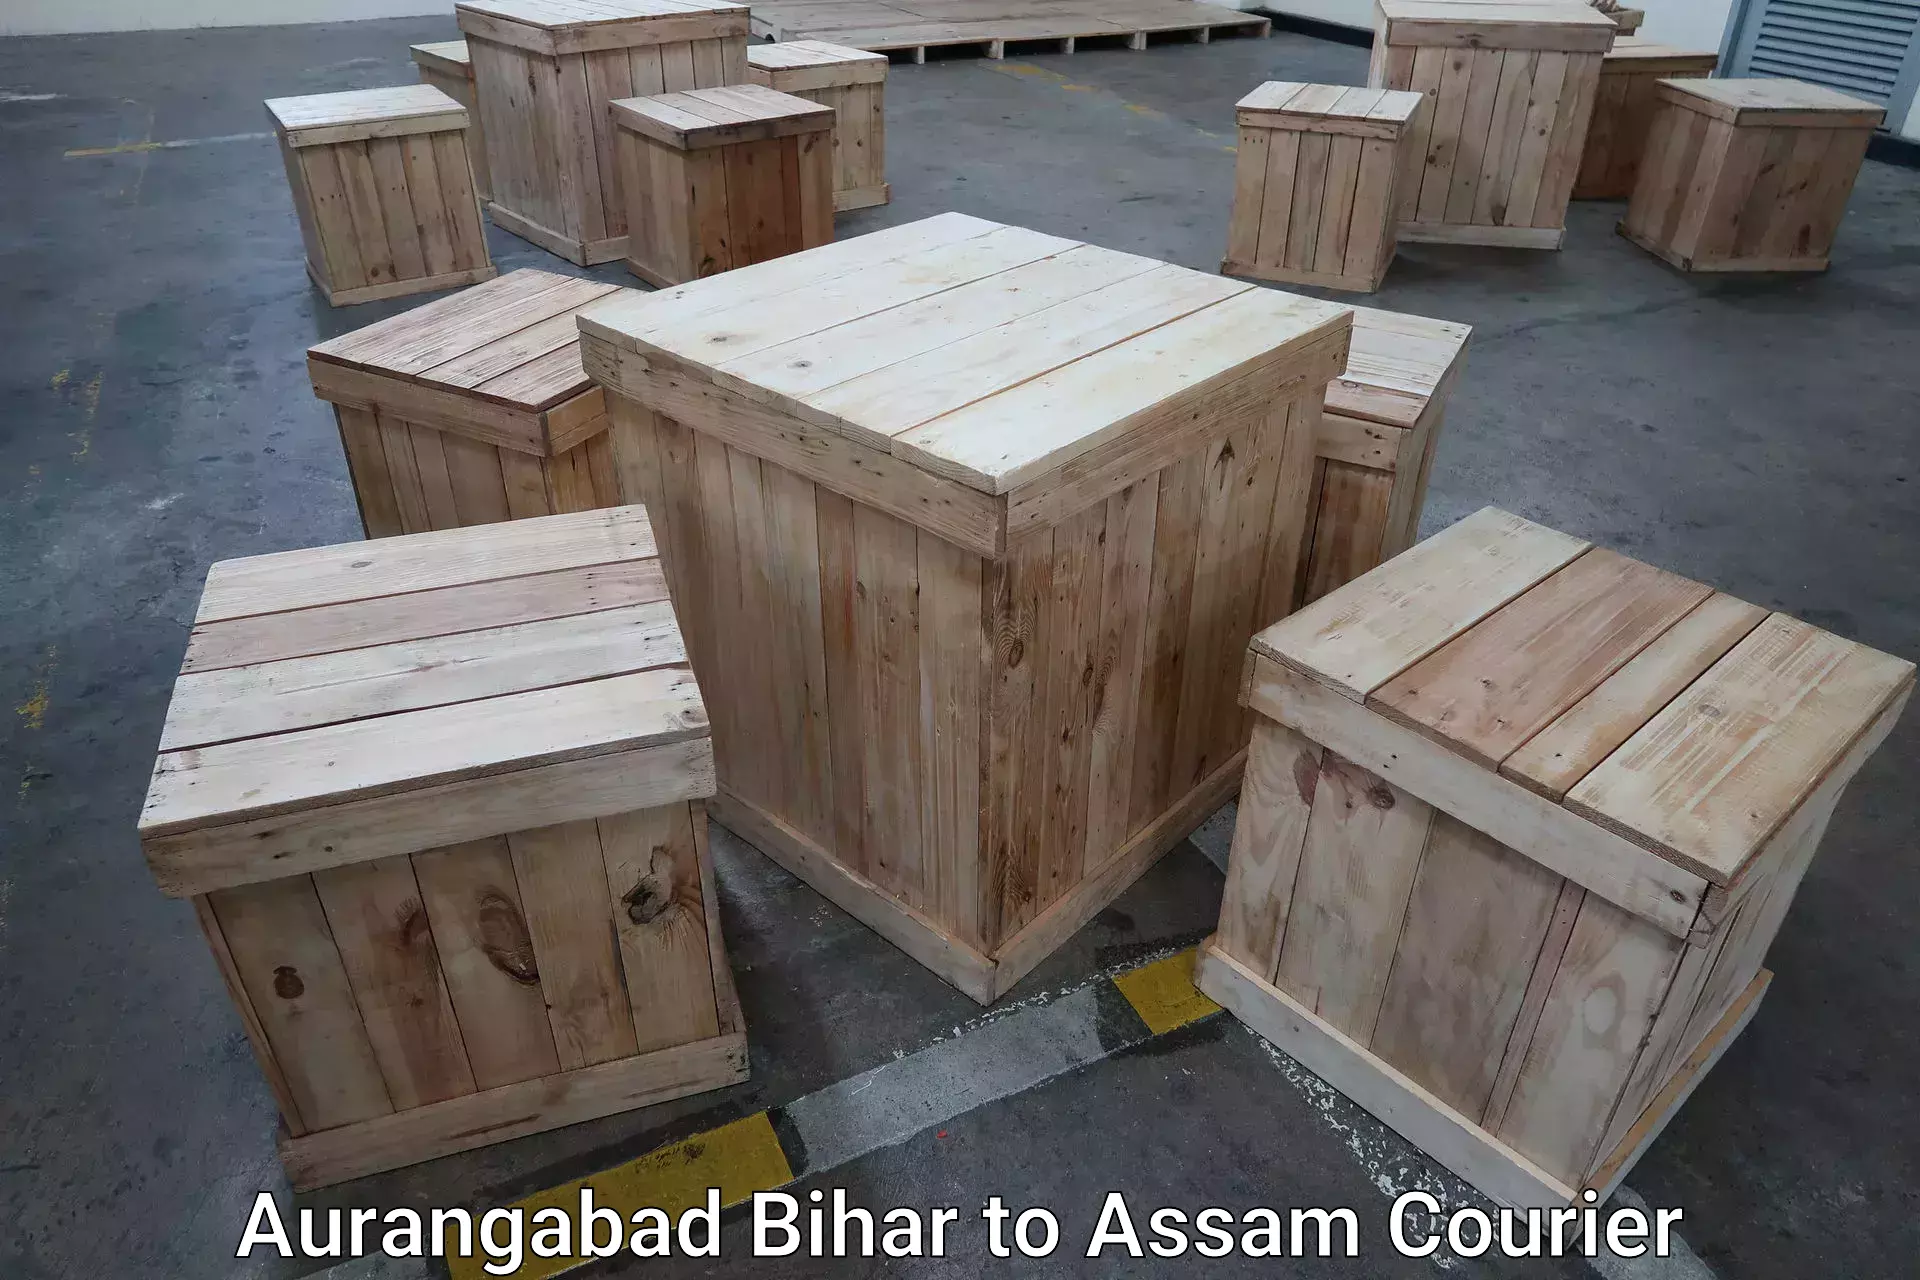 Luggage transport tips in Aurangabad Bihar to Kalaigaon